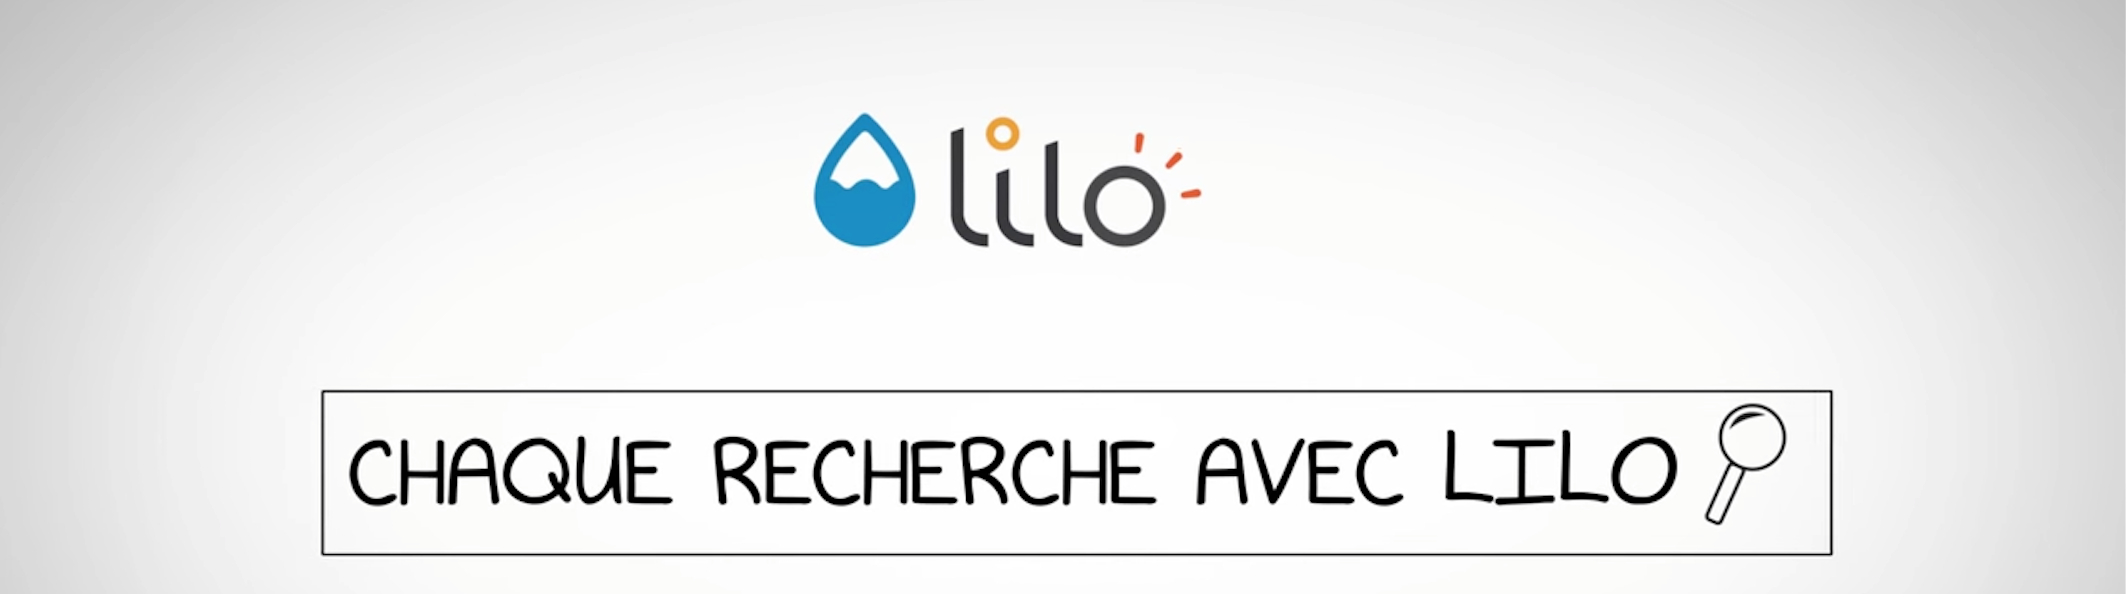 Lilo, un moteur de recherche finançant des projets sociaux et environnementaux